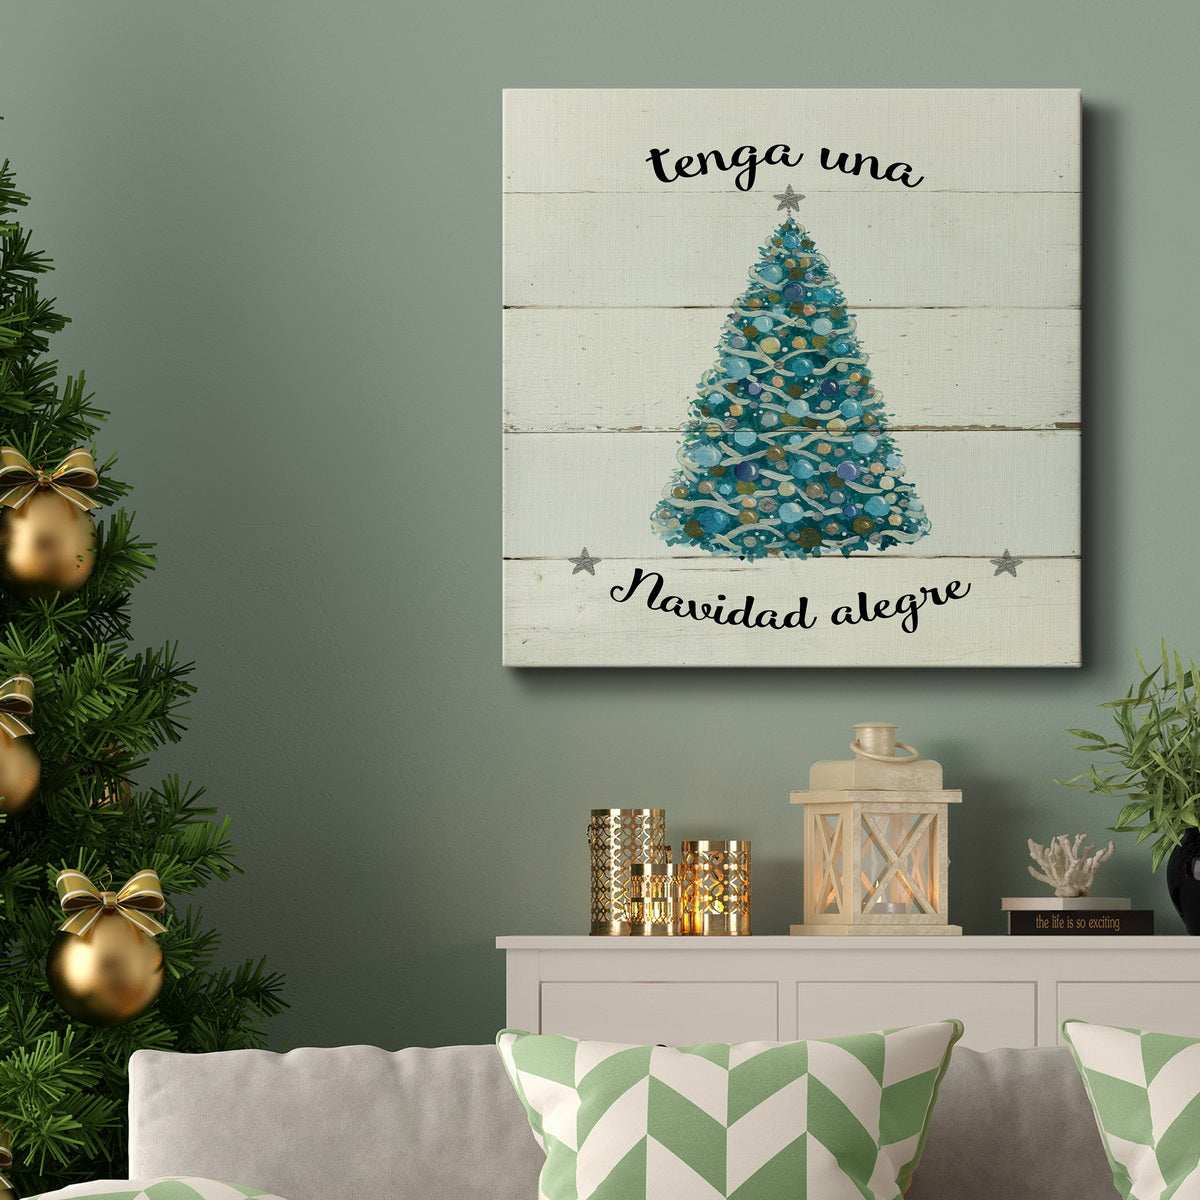 Navidad alegre-Premium Gallery Wrapped Canvas - Ready to Hang